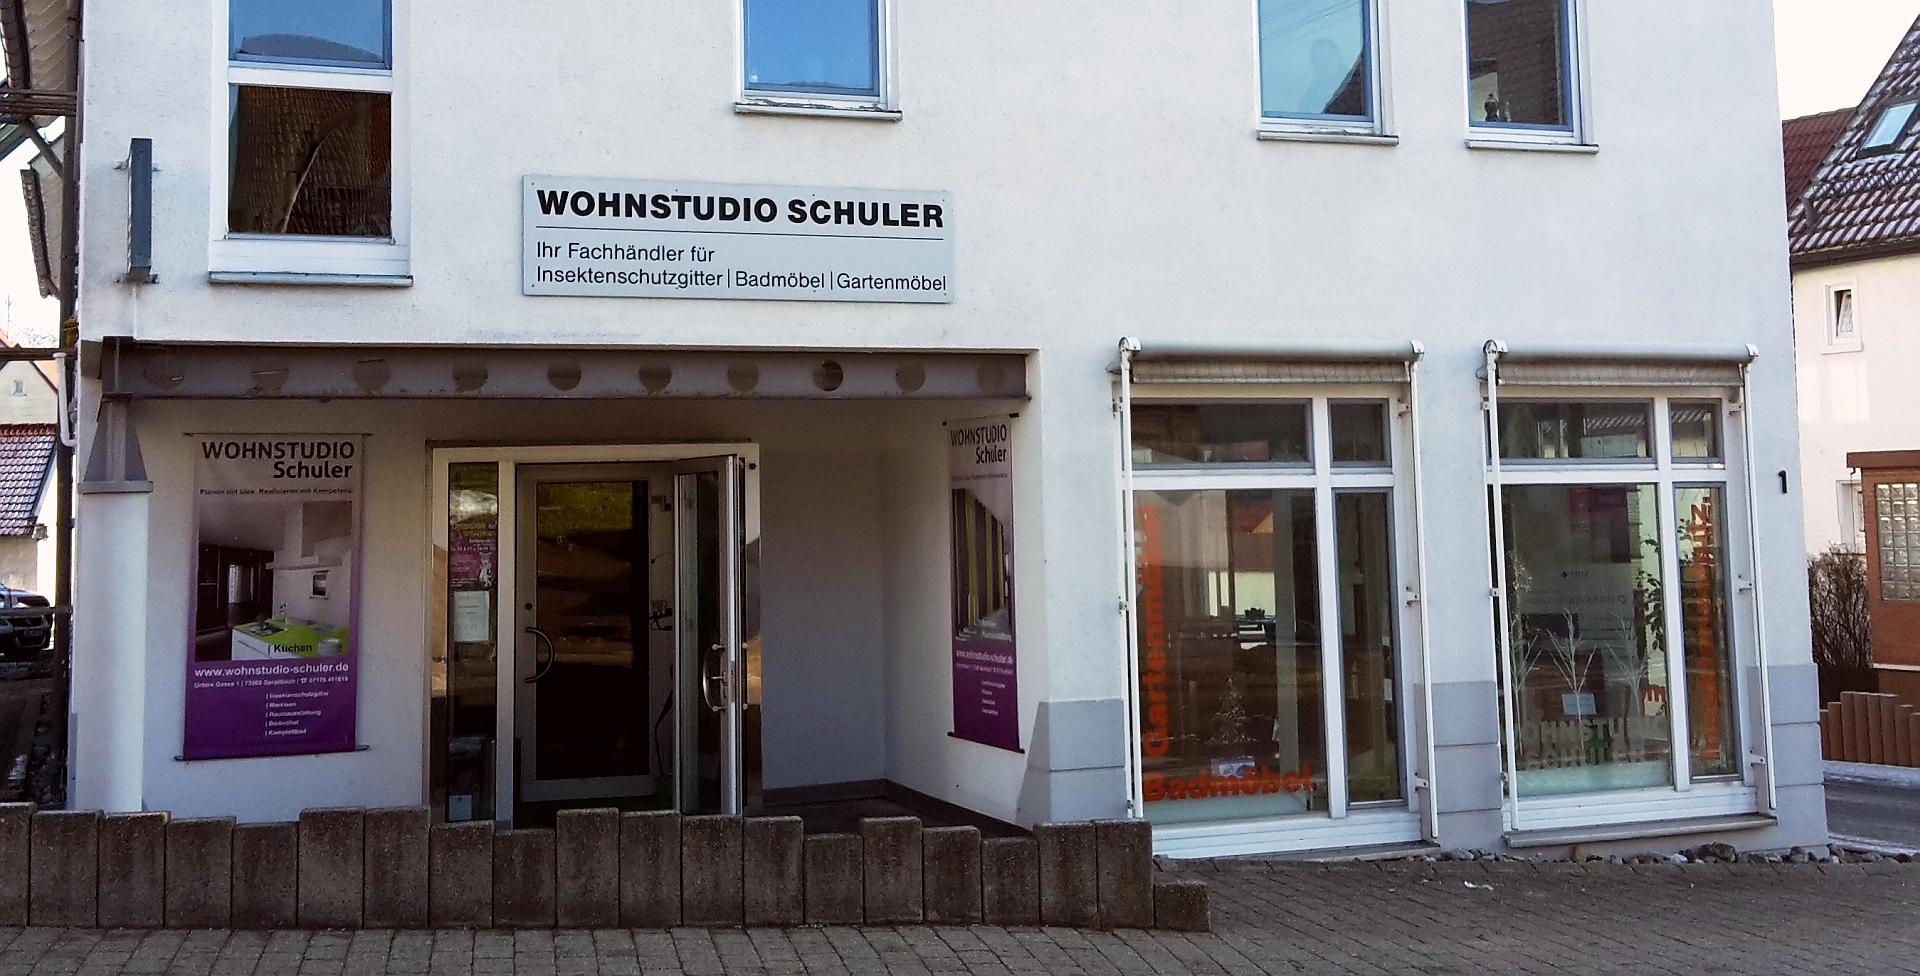 (c) Wohnstudio-schuler.de